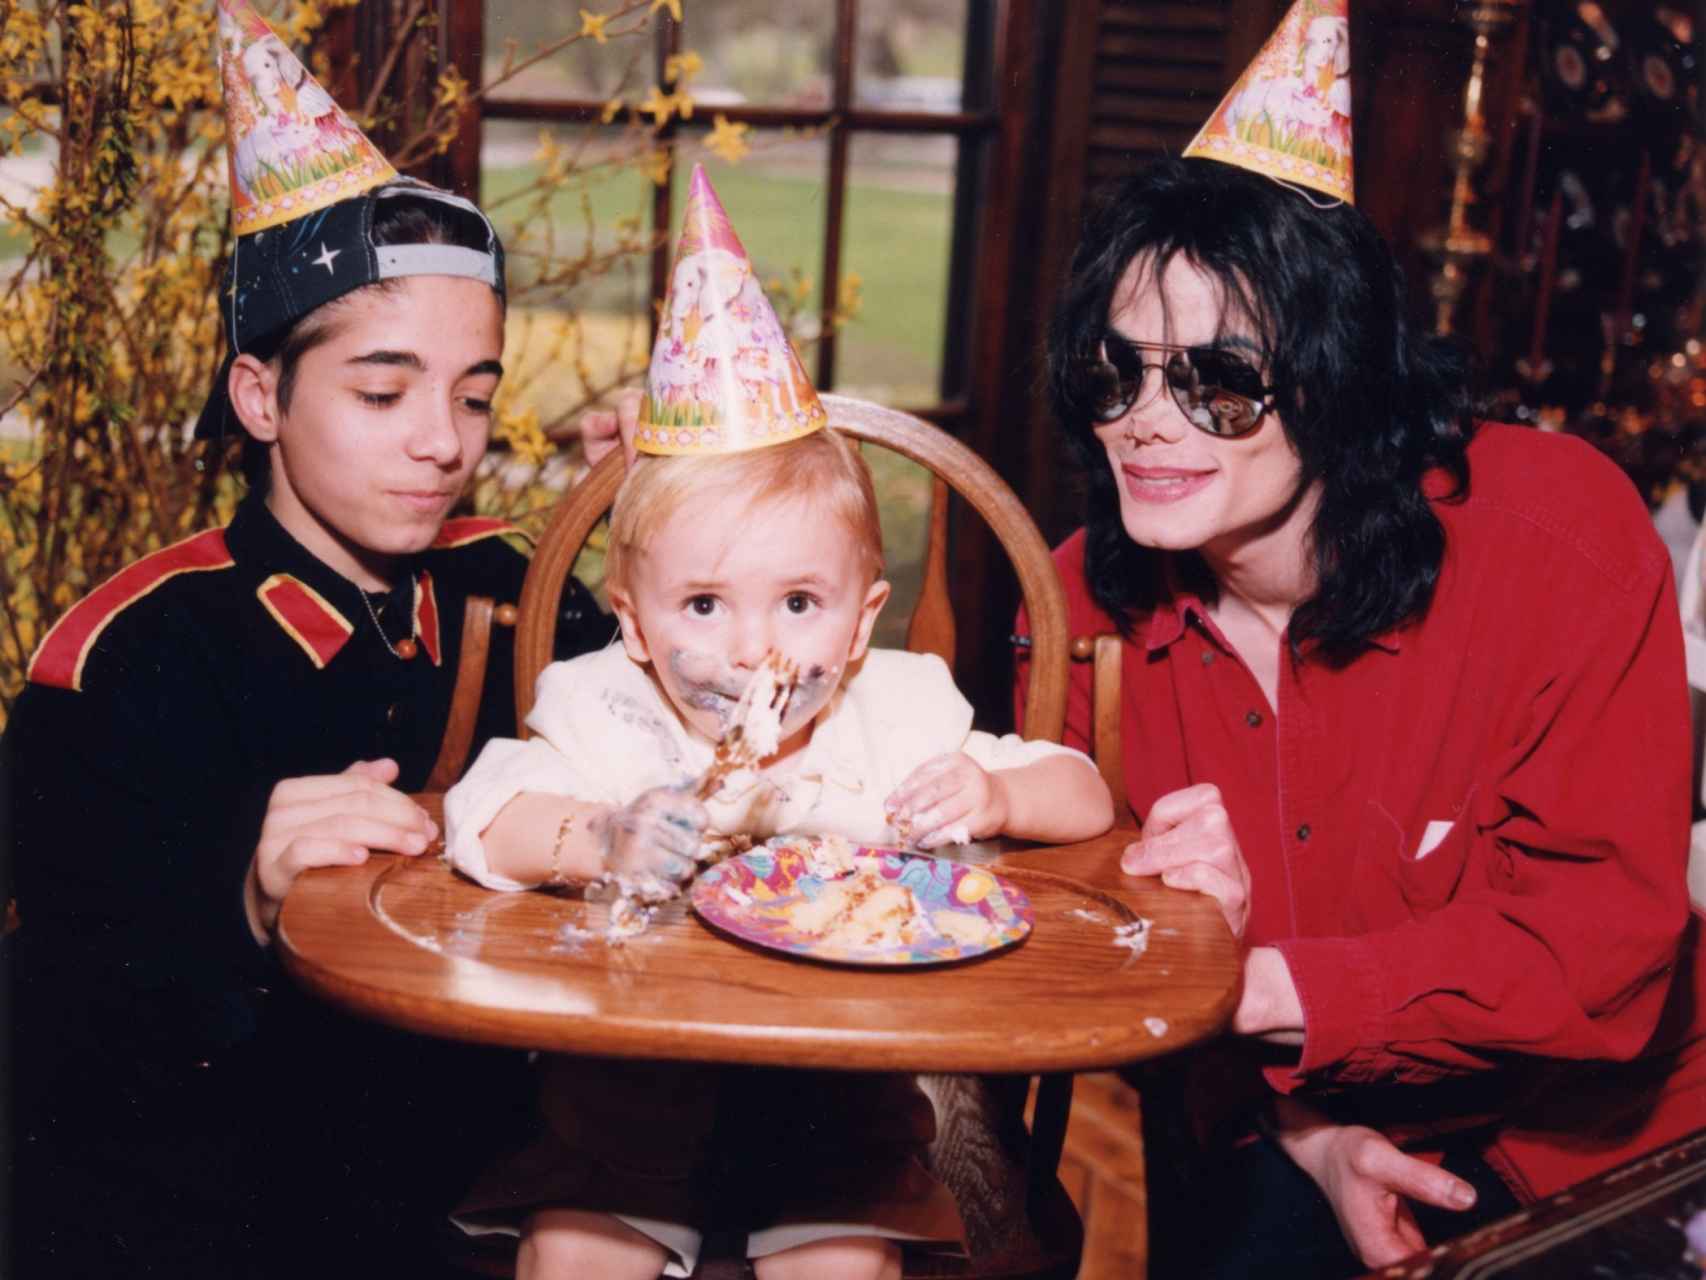 Michael Jackson celebrando el cumpleaños de su hijo Paris, junto a Prince, en Neverland.